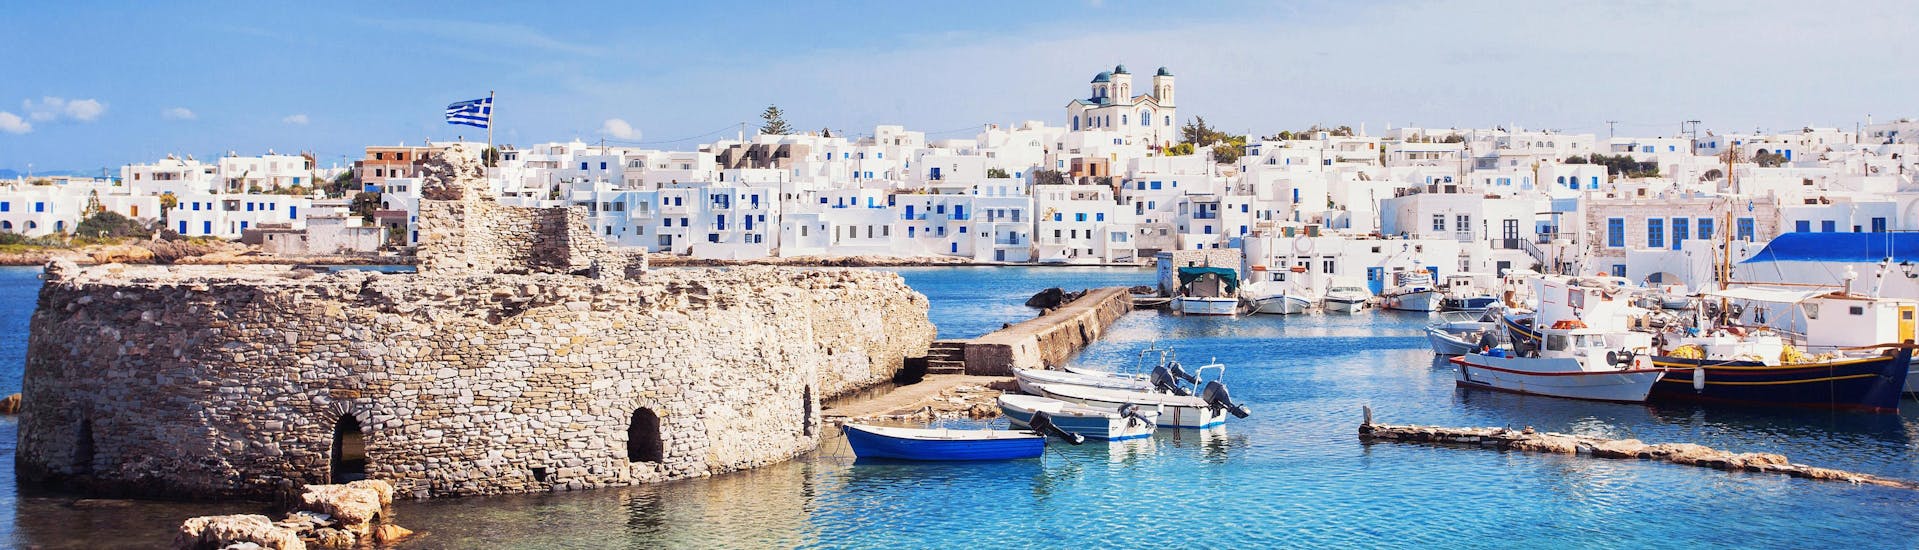 Una imagen del puerto de Naxos, un destino popular para quienes quieren practicar deportes acuáticos en Grecia.